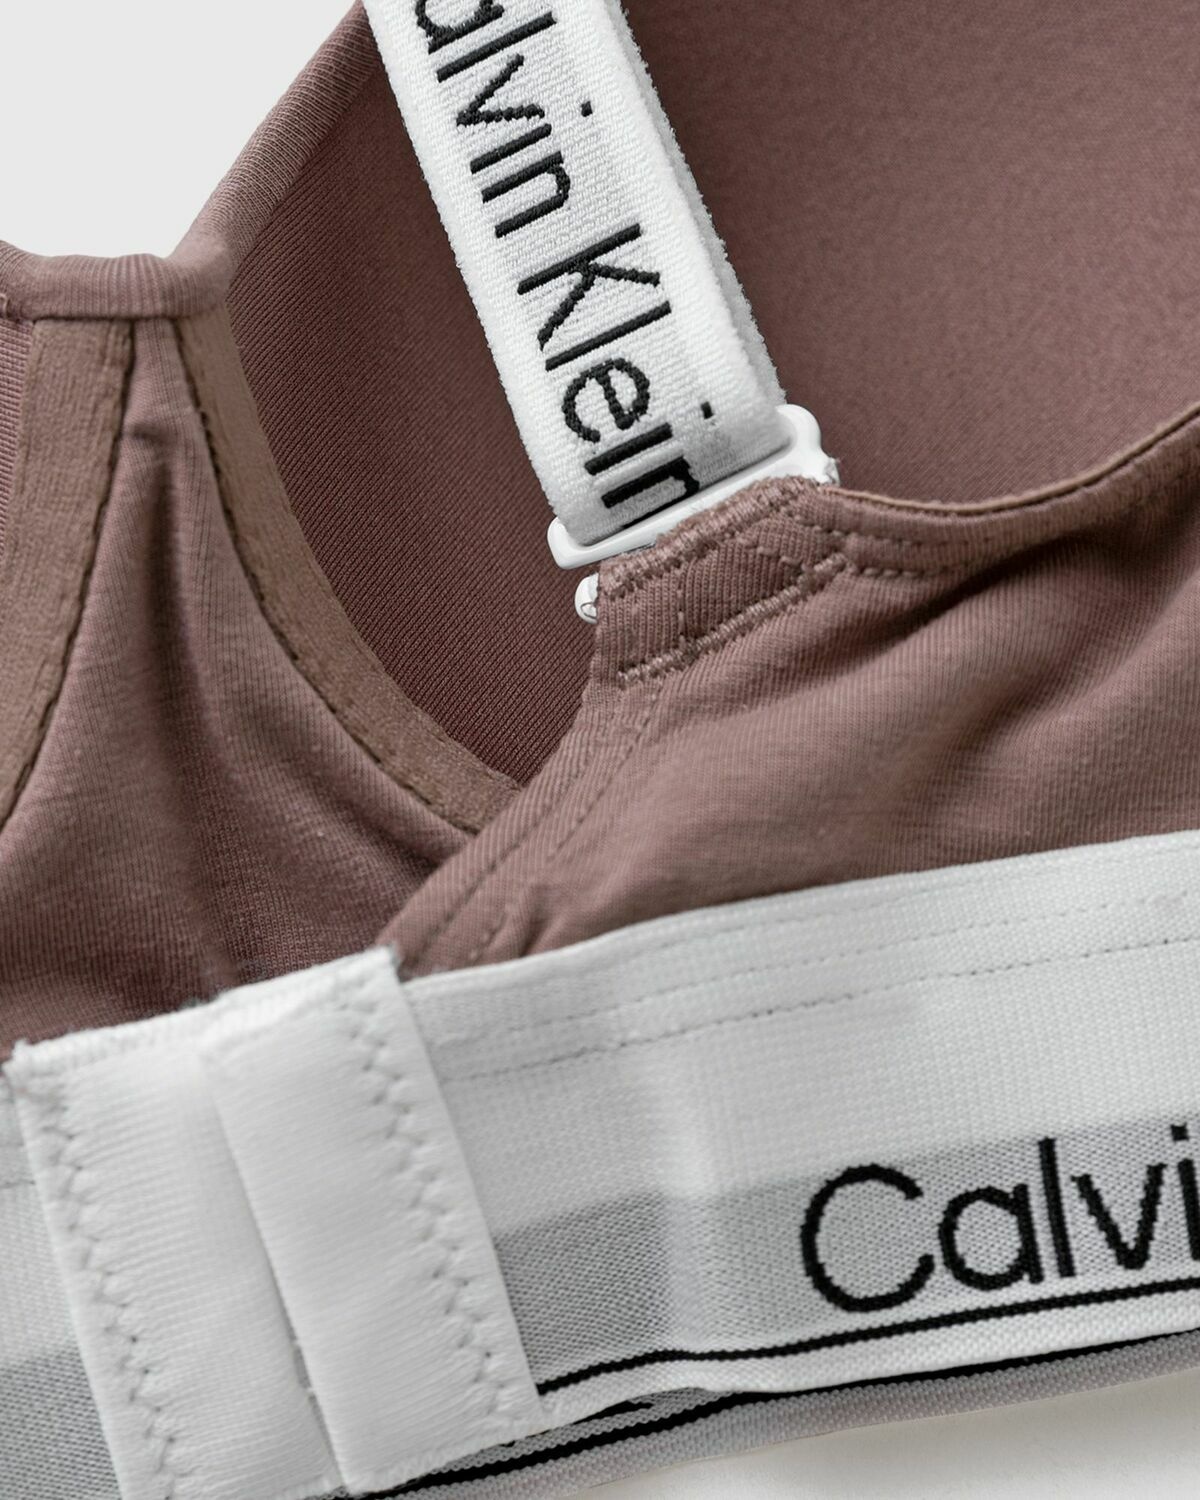 Calvin Klein Underwear Wmns Light Lined Bralette Brown - Womens - (Sports ) Bras  Calvin Klein Underwear